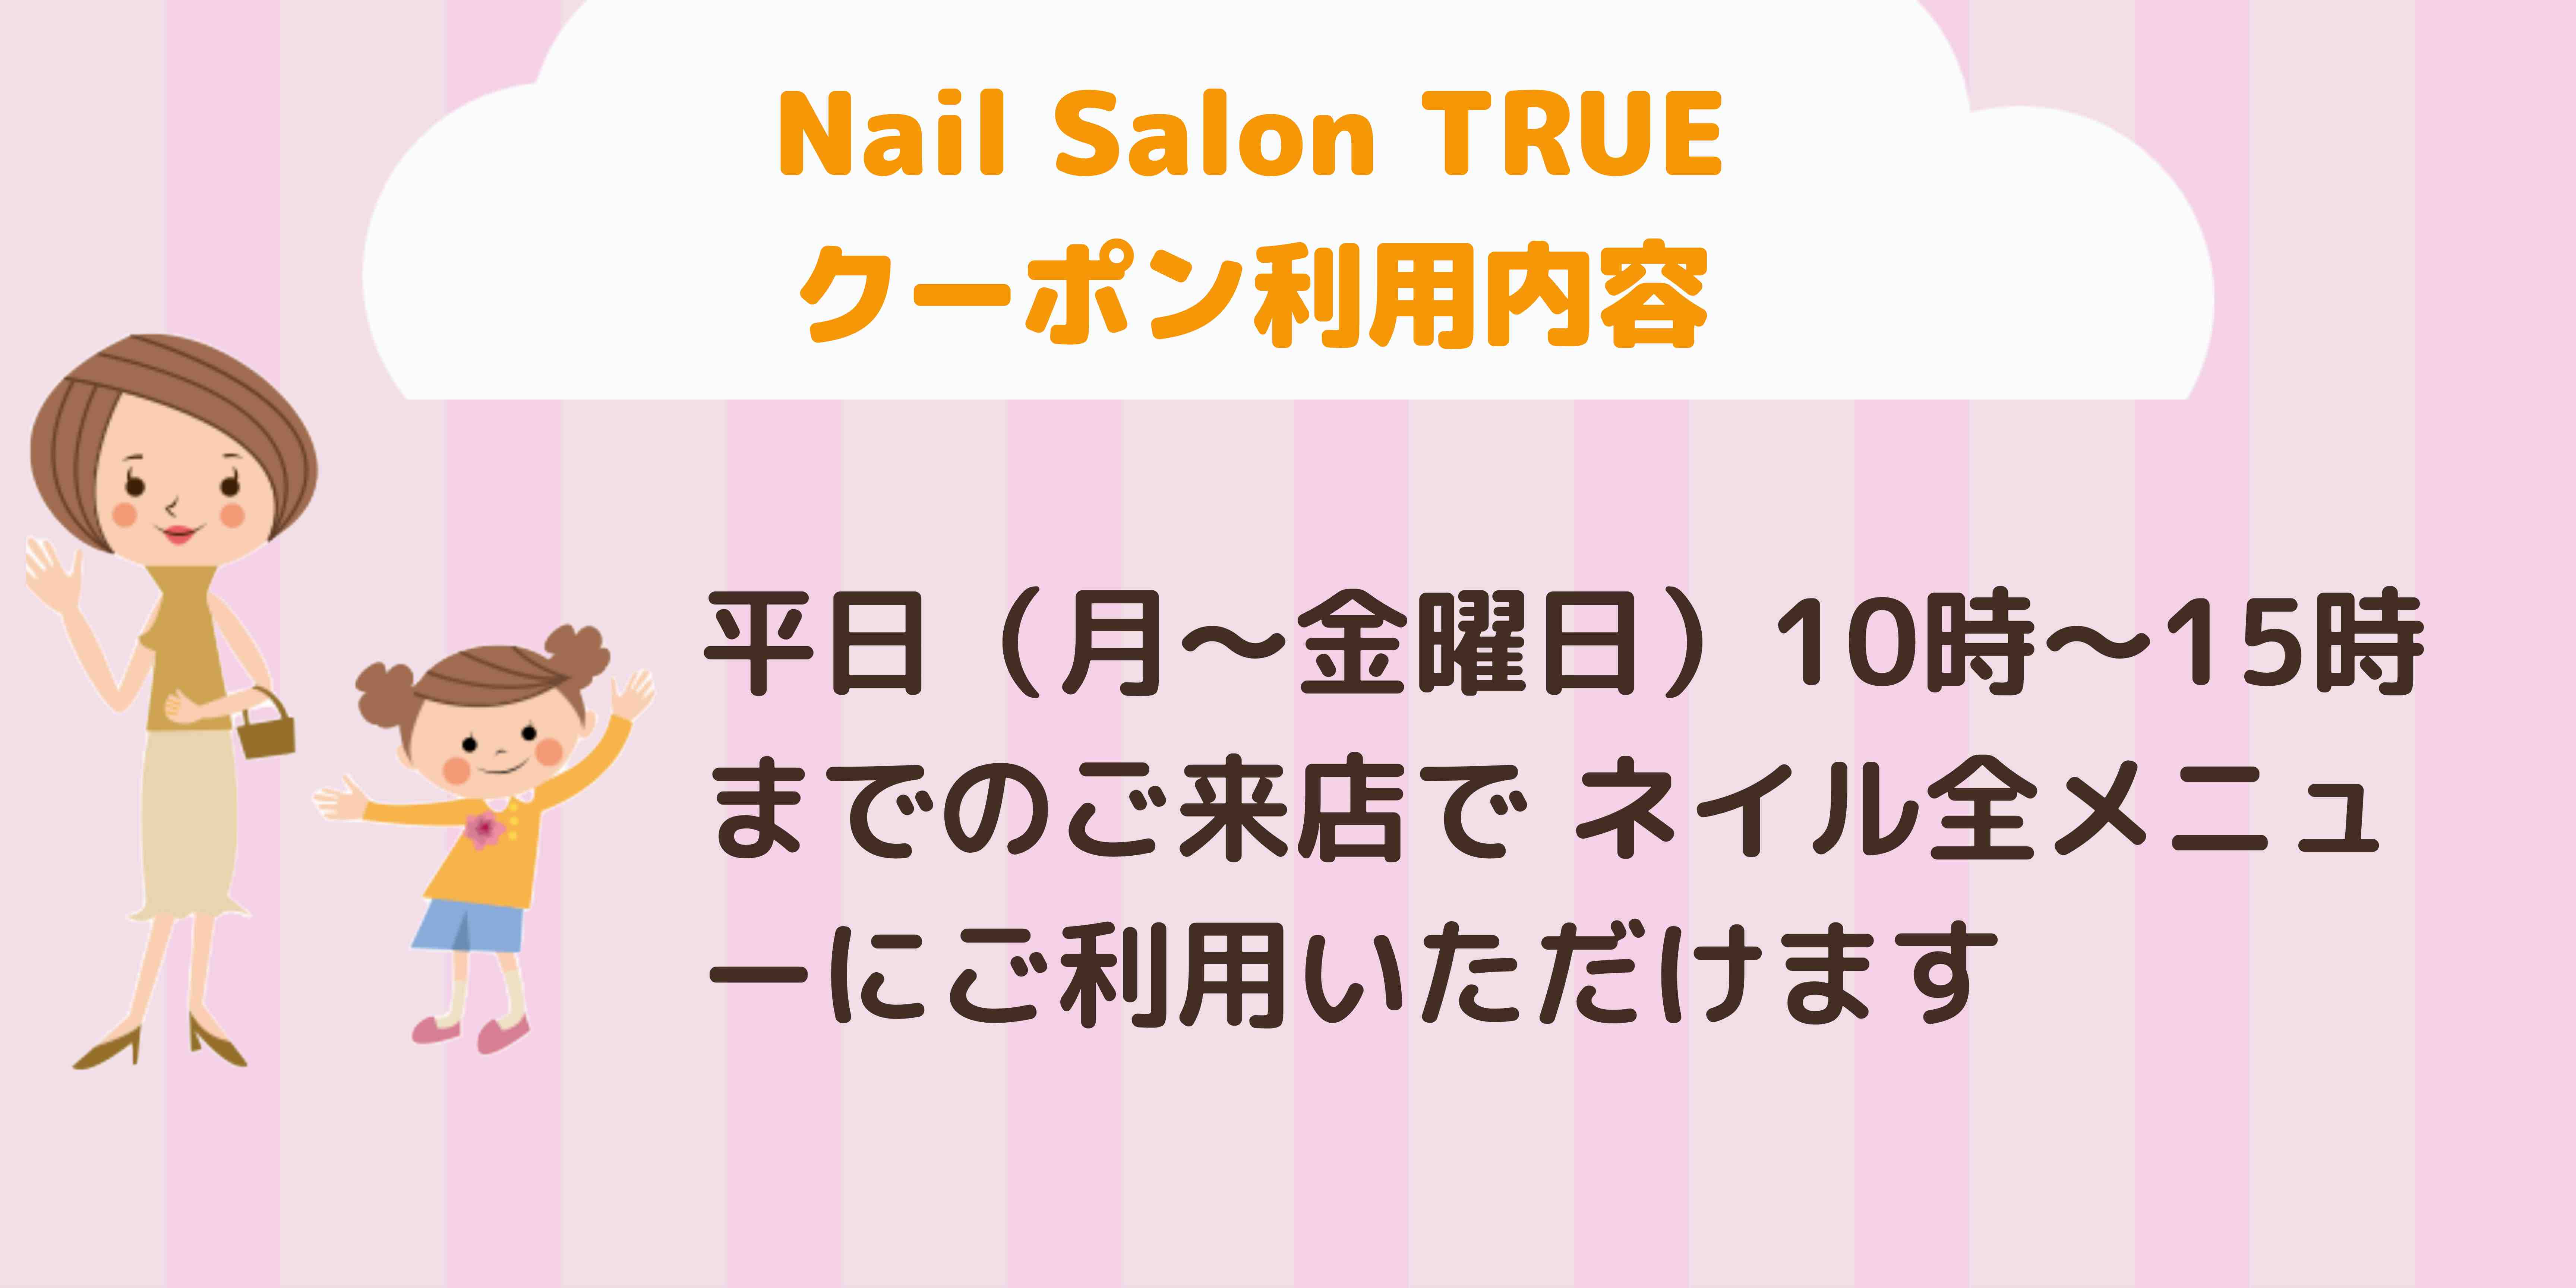 Nail Salon TRUE